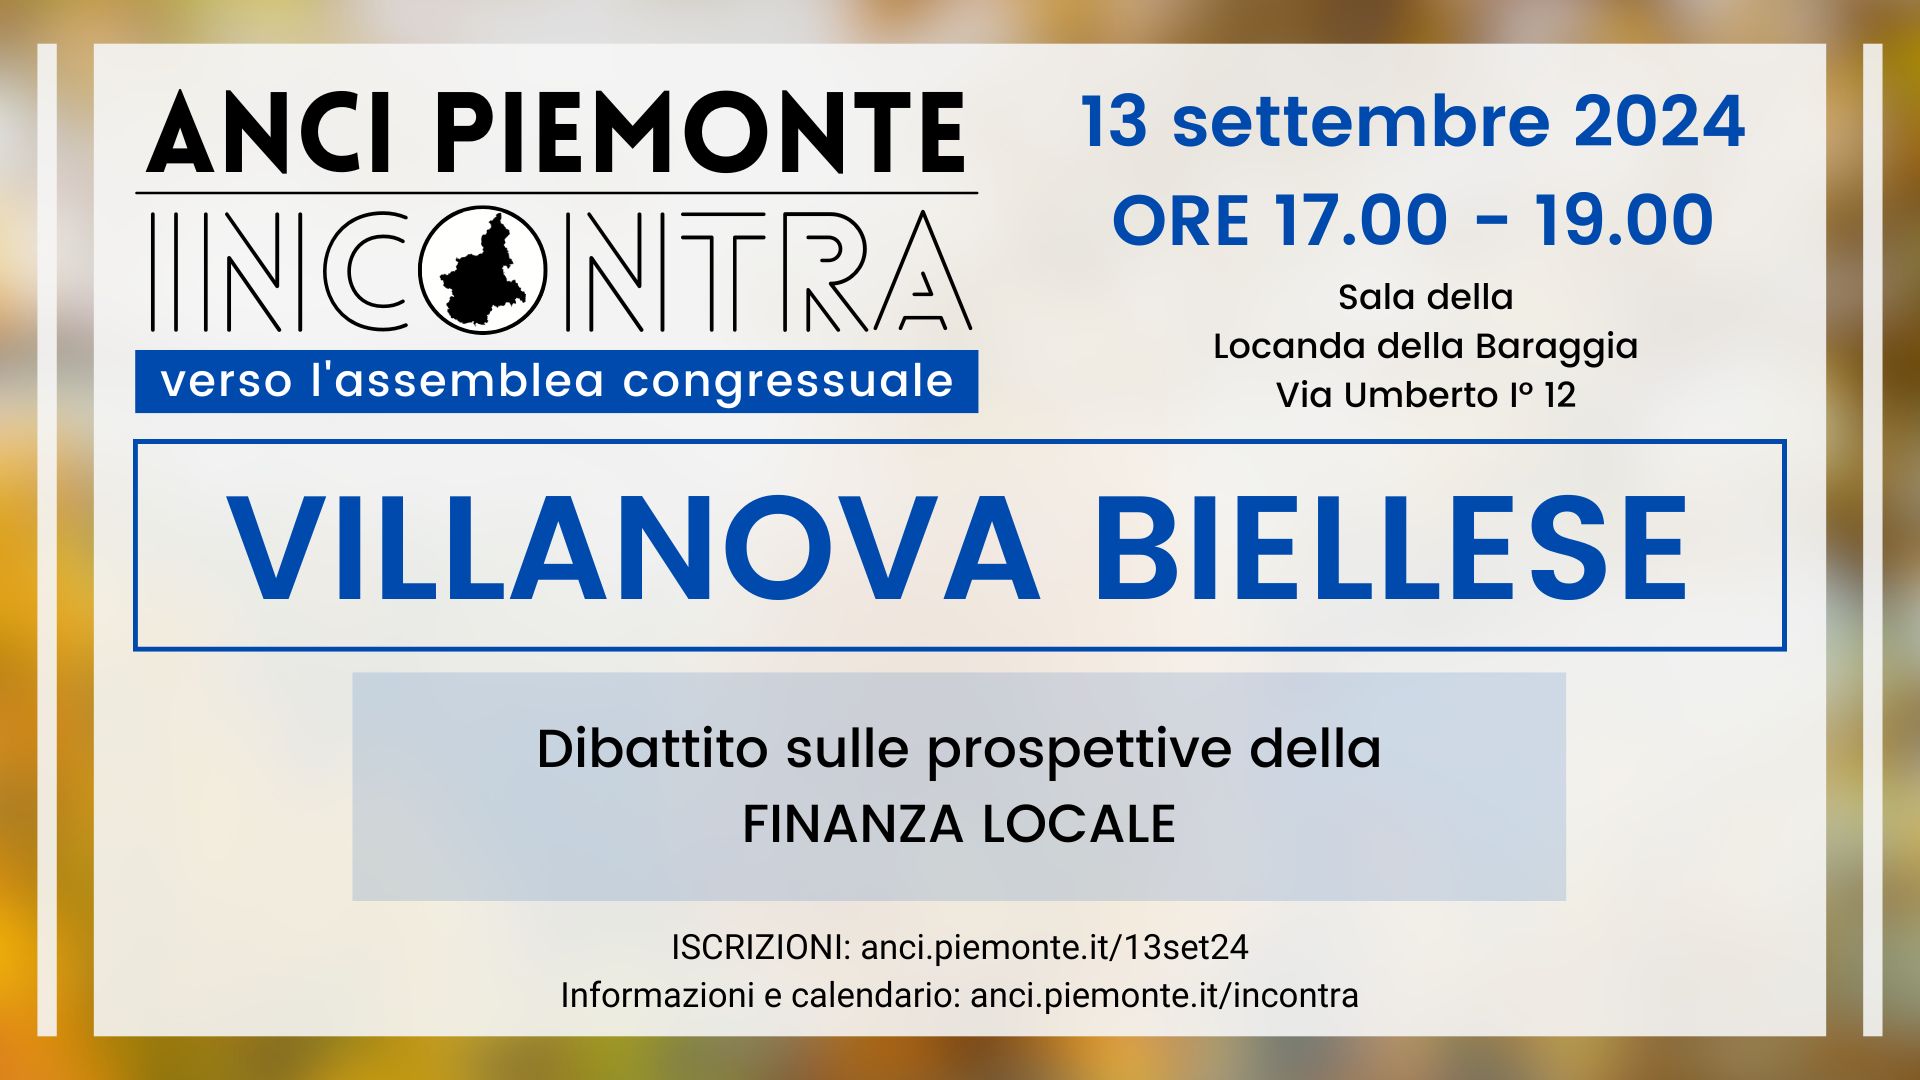 ANCI Piemonte Incontra - Villanova Biellese - 13 settembre 2024